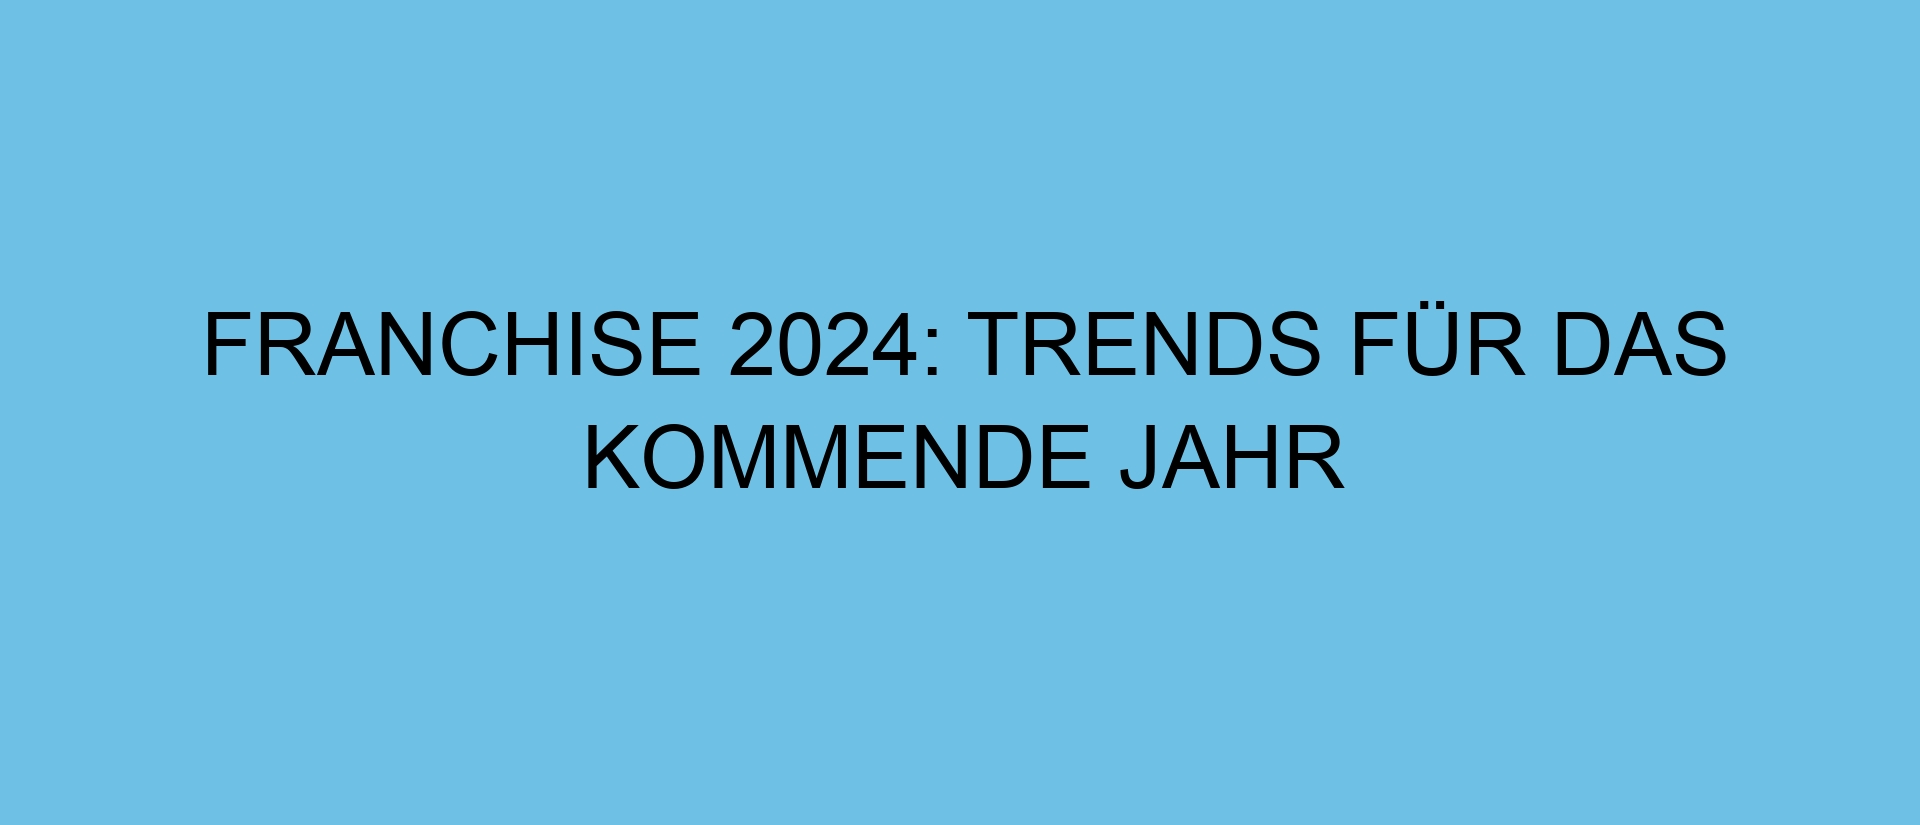 Franchise 2024: Trends für das kommende Jahr